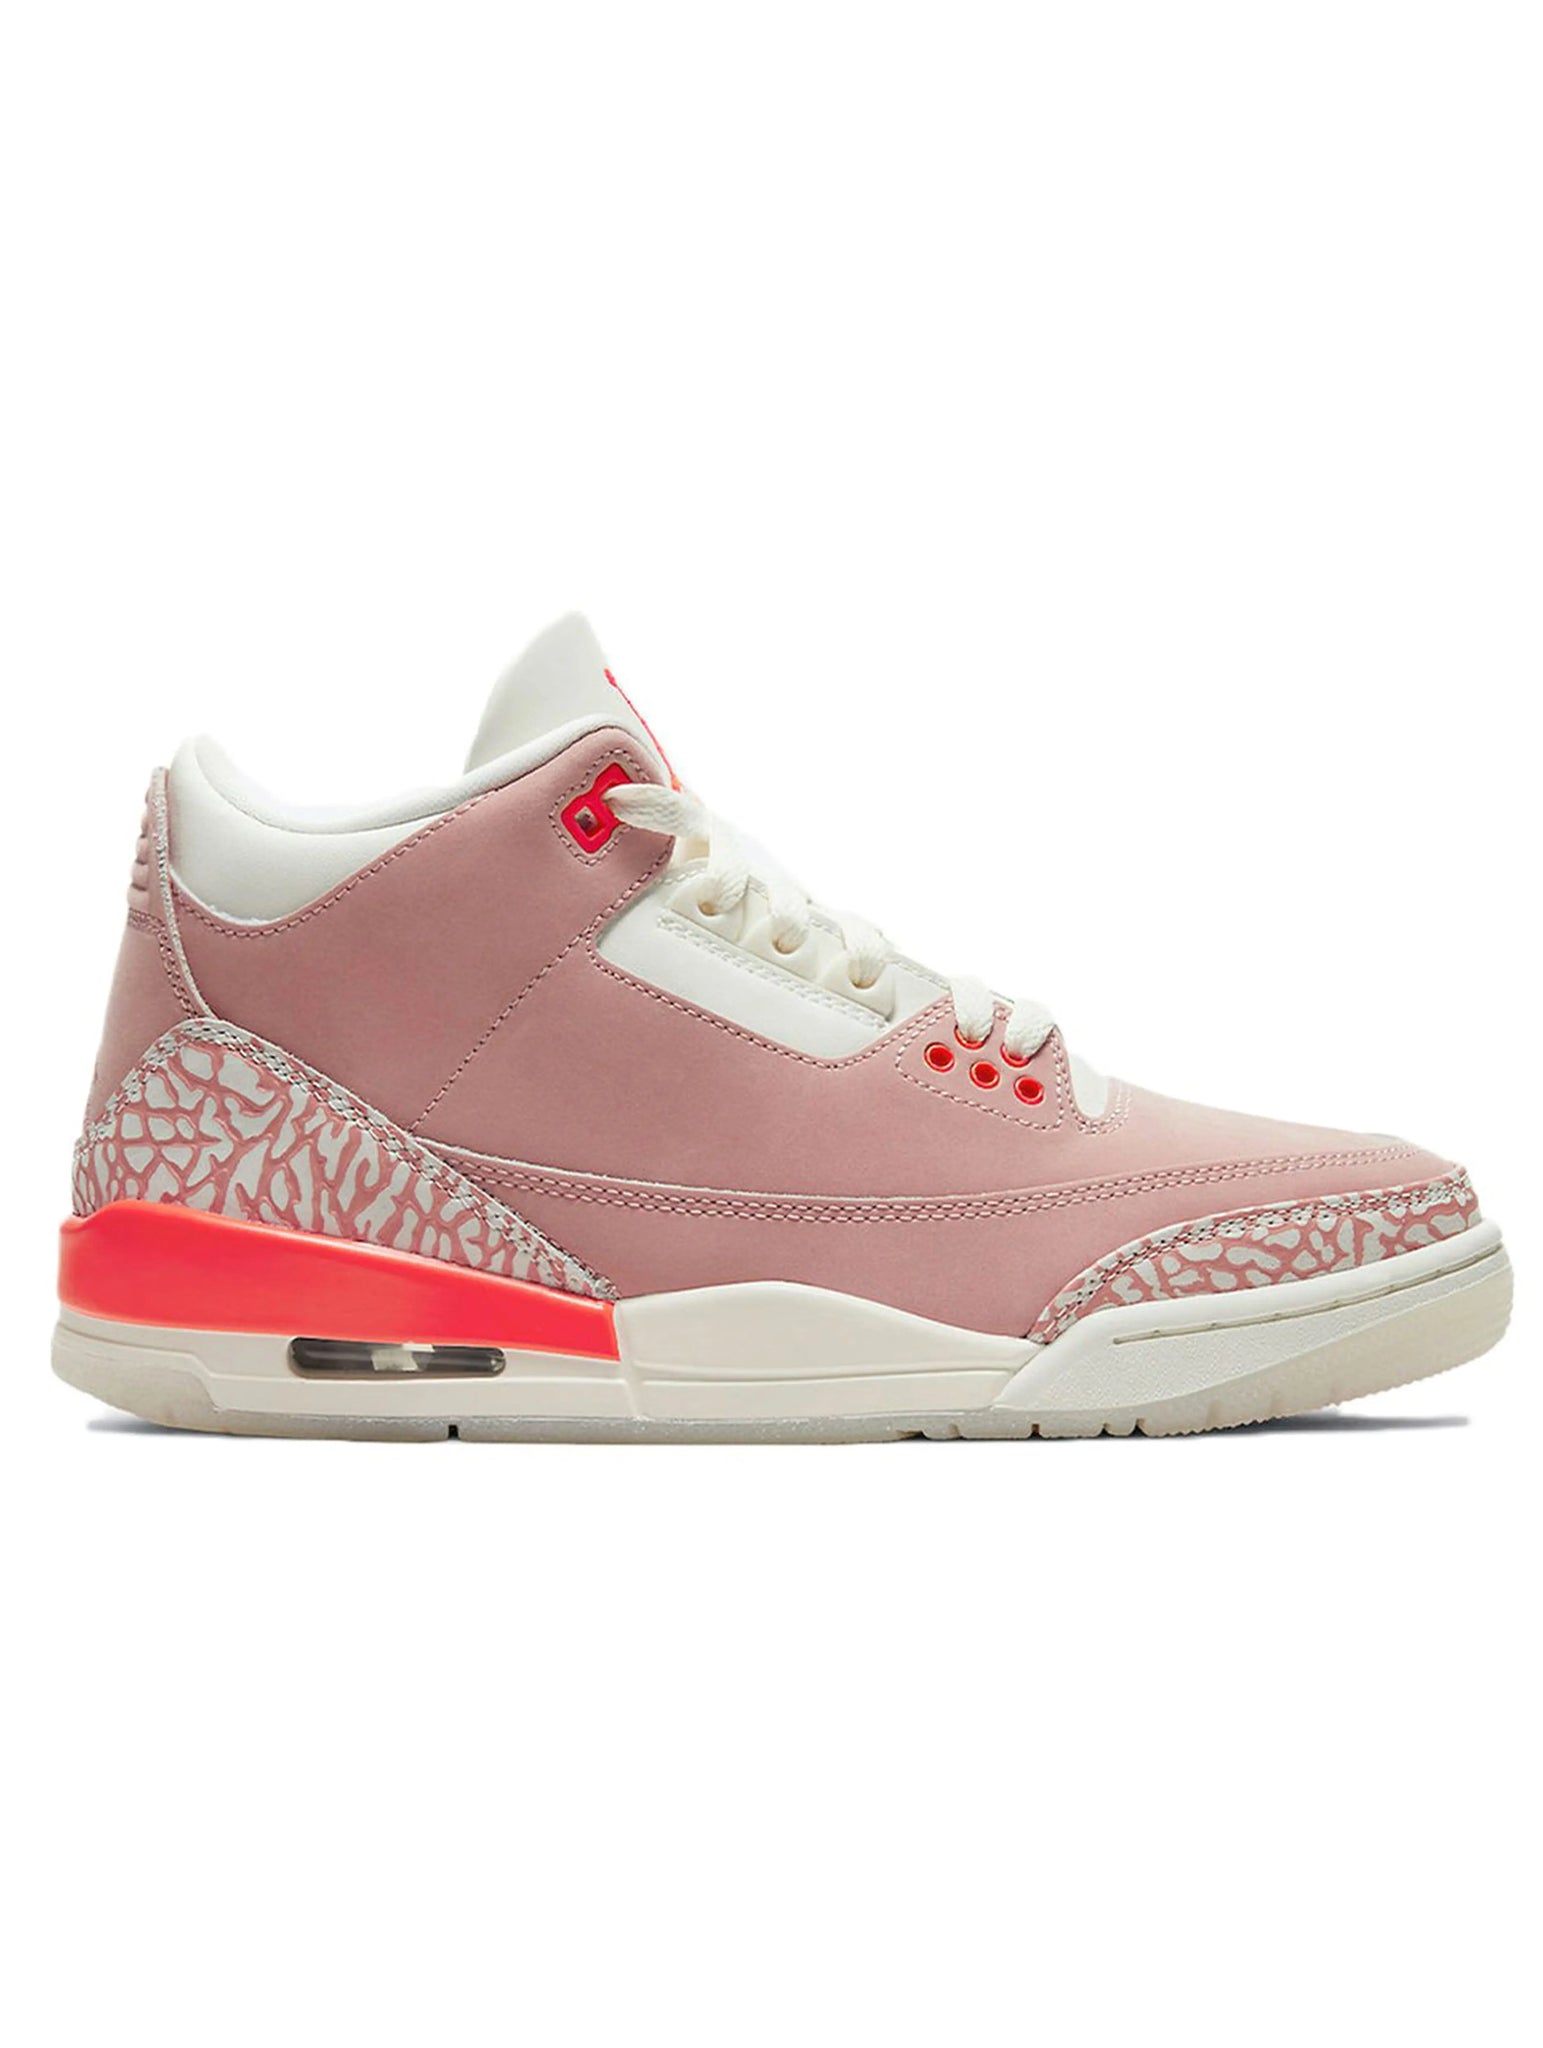 Nike Air Jordan 3 Retro Rust Pink [W] Prior